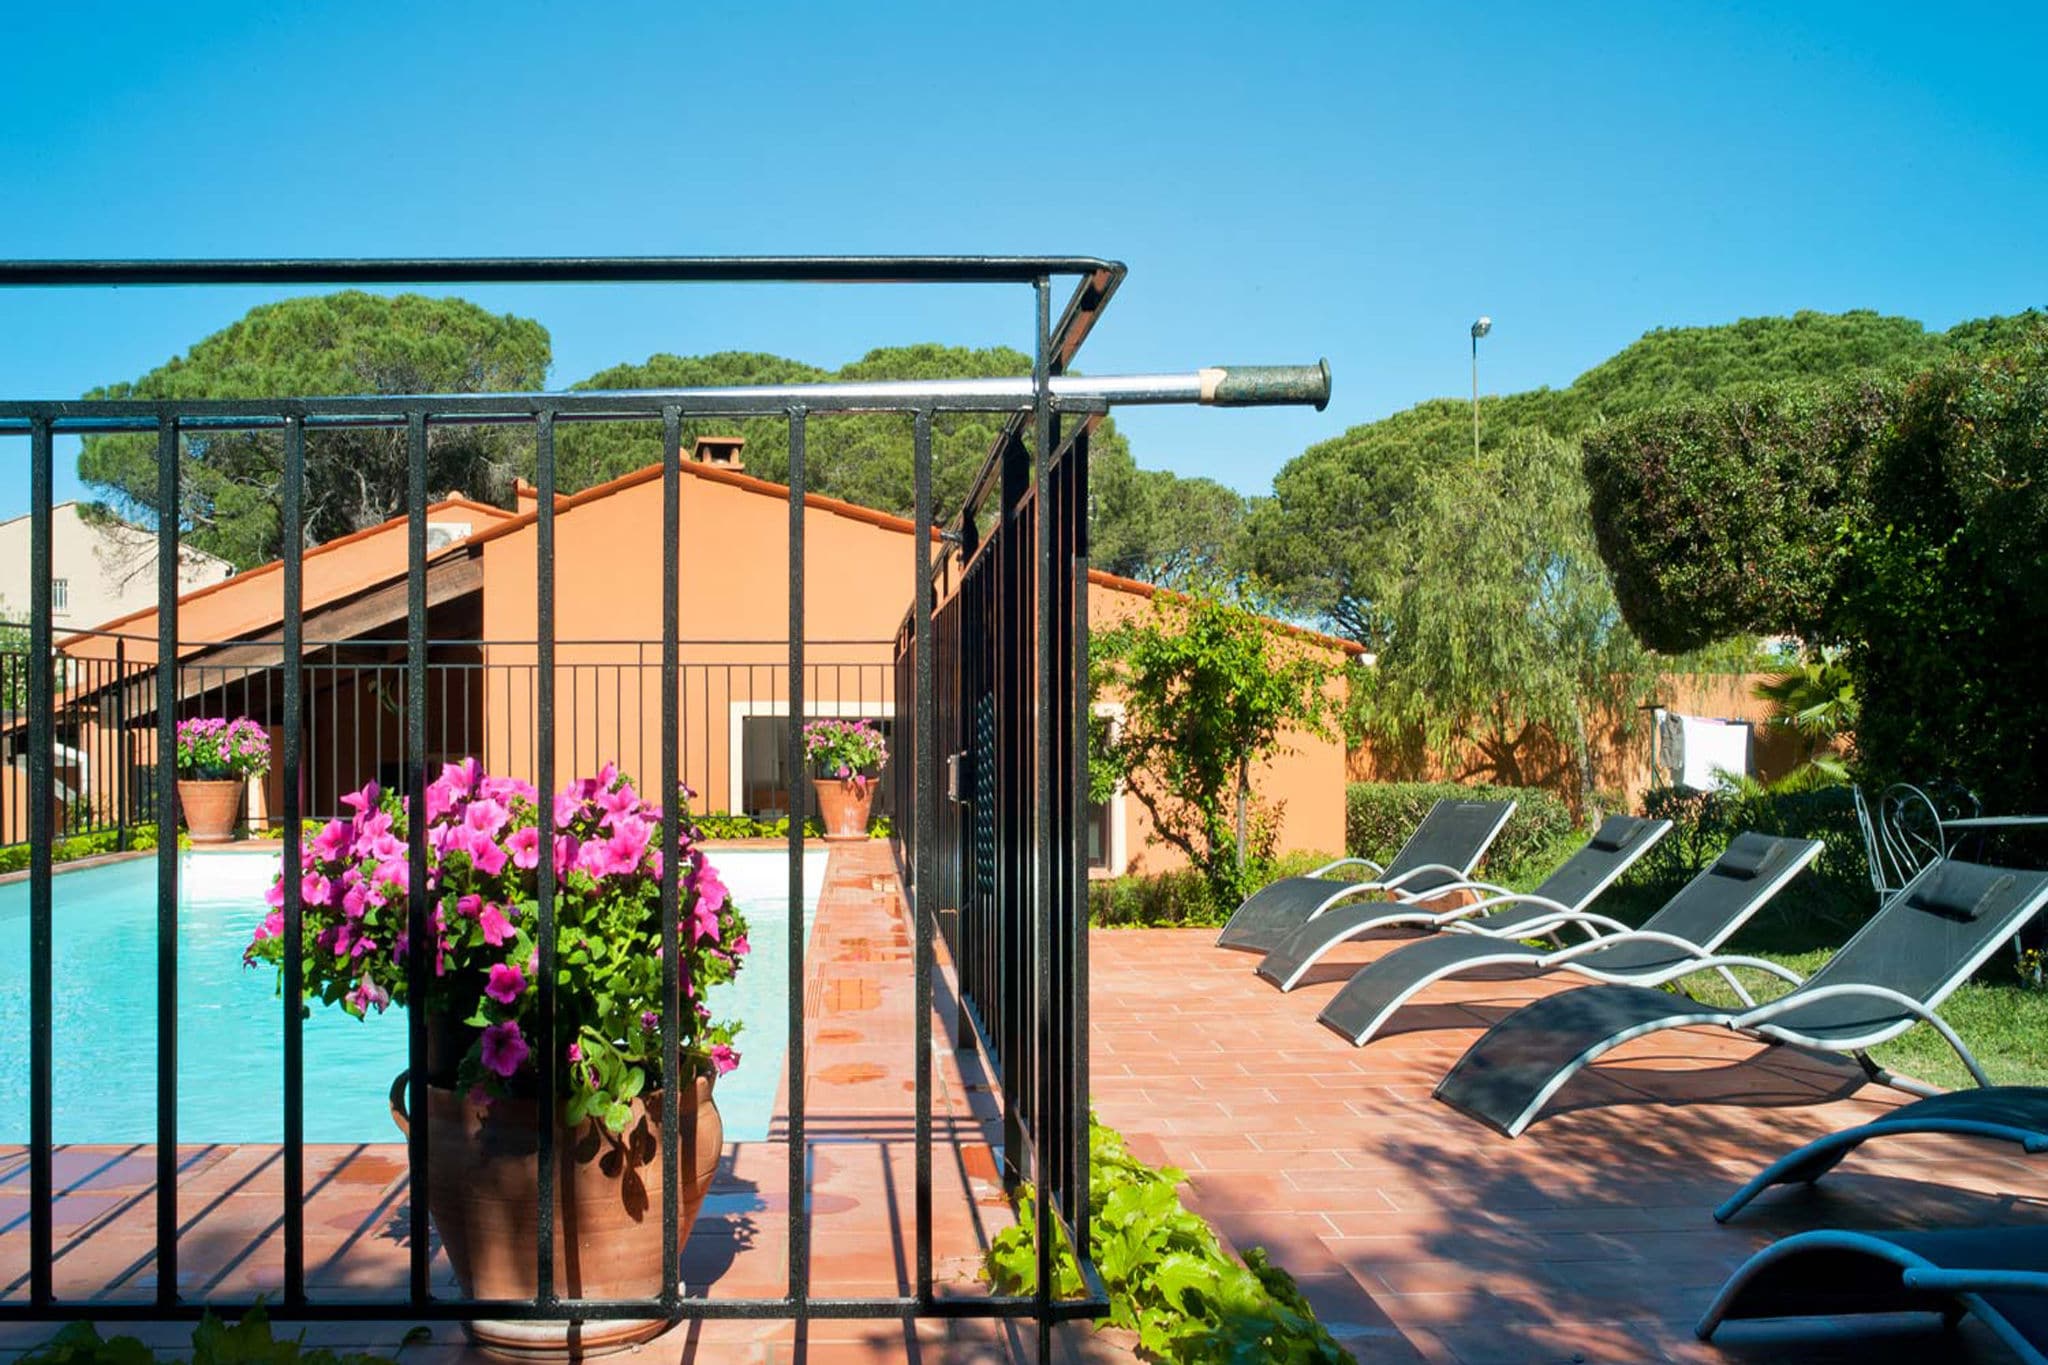 Vrijstaand vakantiehuis in de Provence met privézwembad